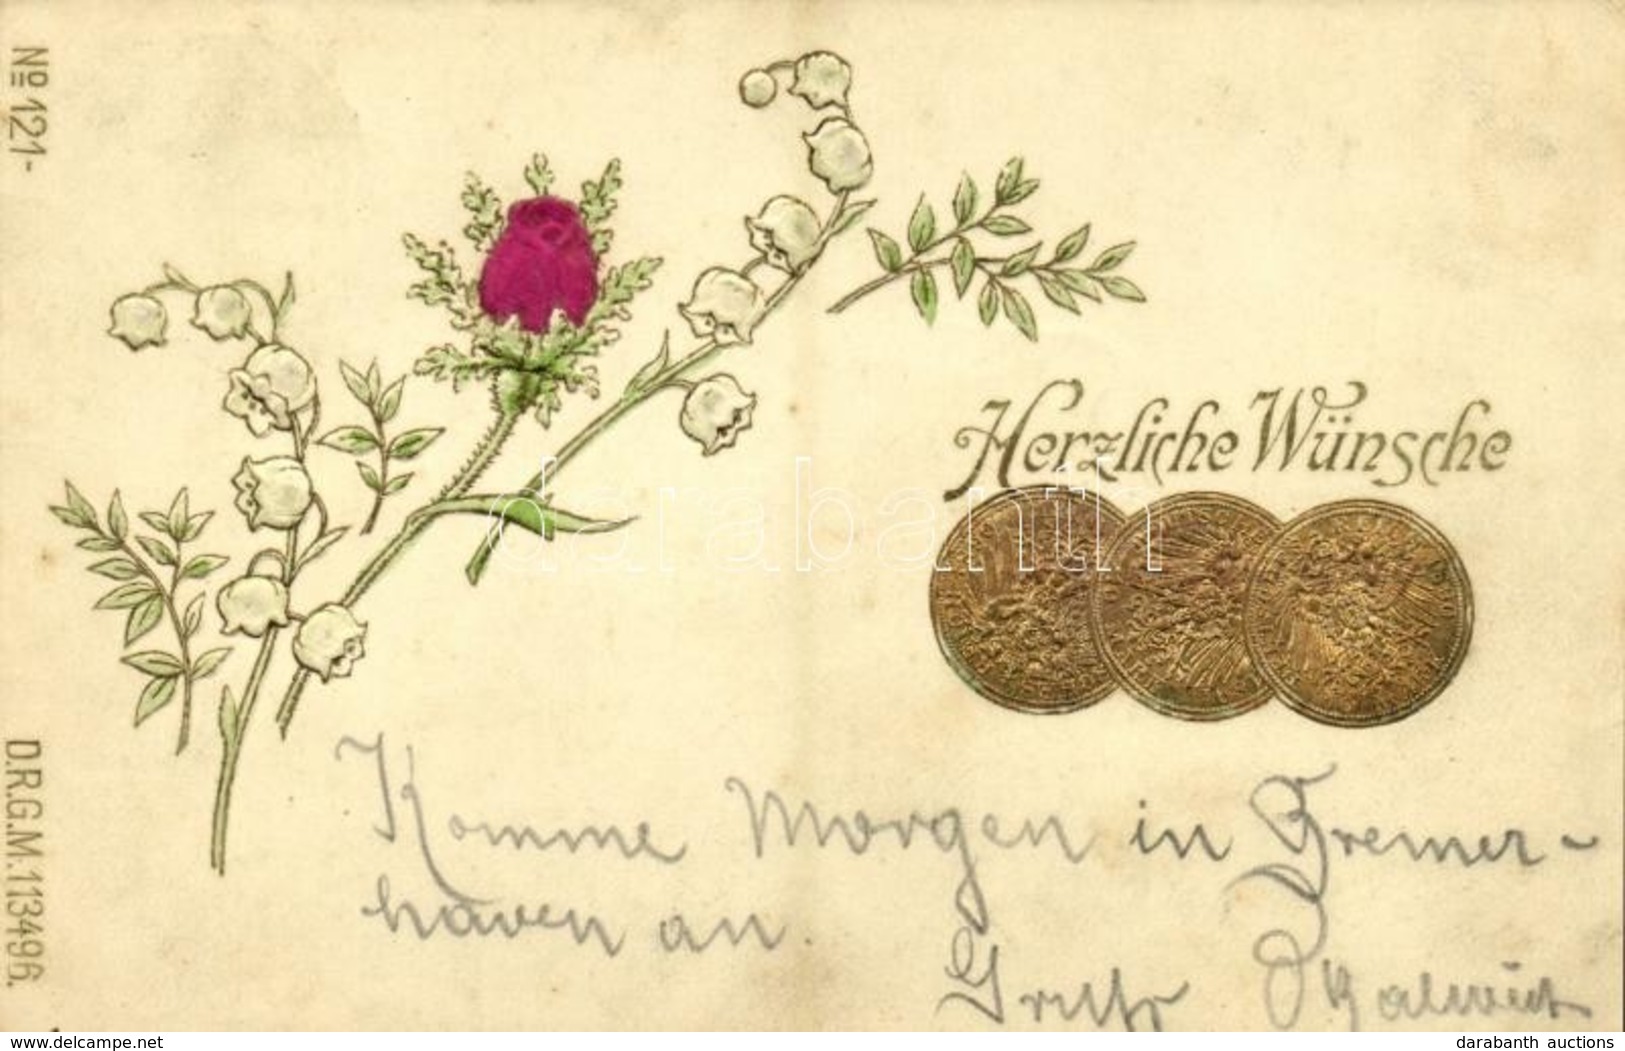 T2 1900 Herzliche Wünsche. Deutsche Reich 10 Mark / Coins Of Germany. Greeting With Flower, Silk Card. DRGM 113496. No.  - Unclassified